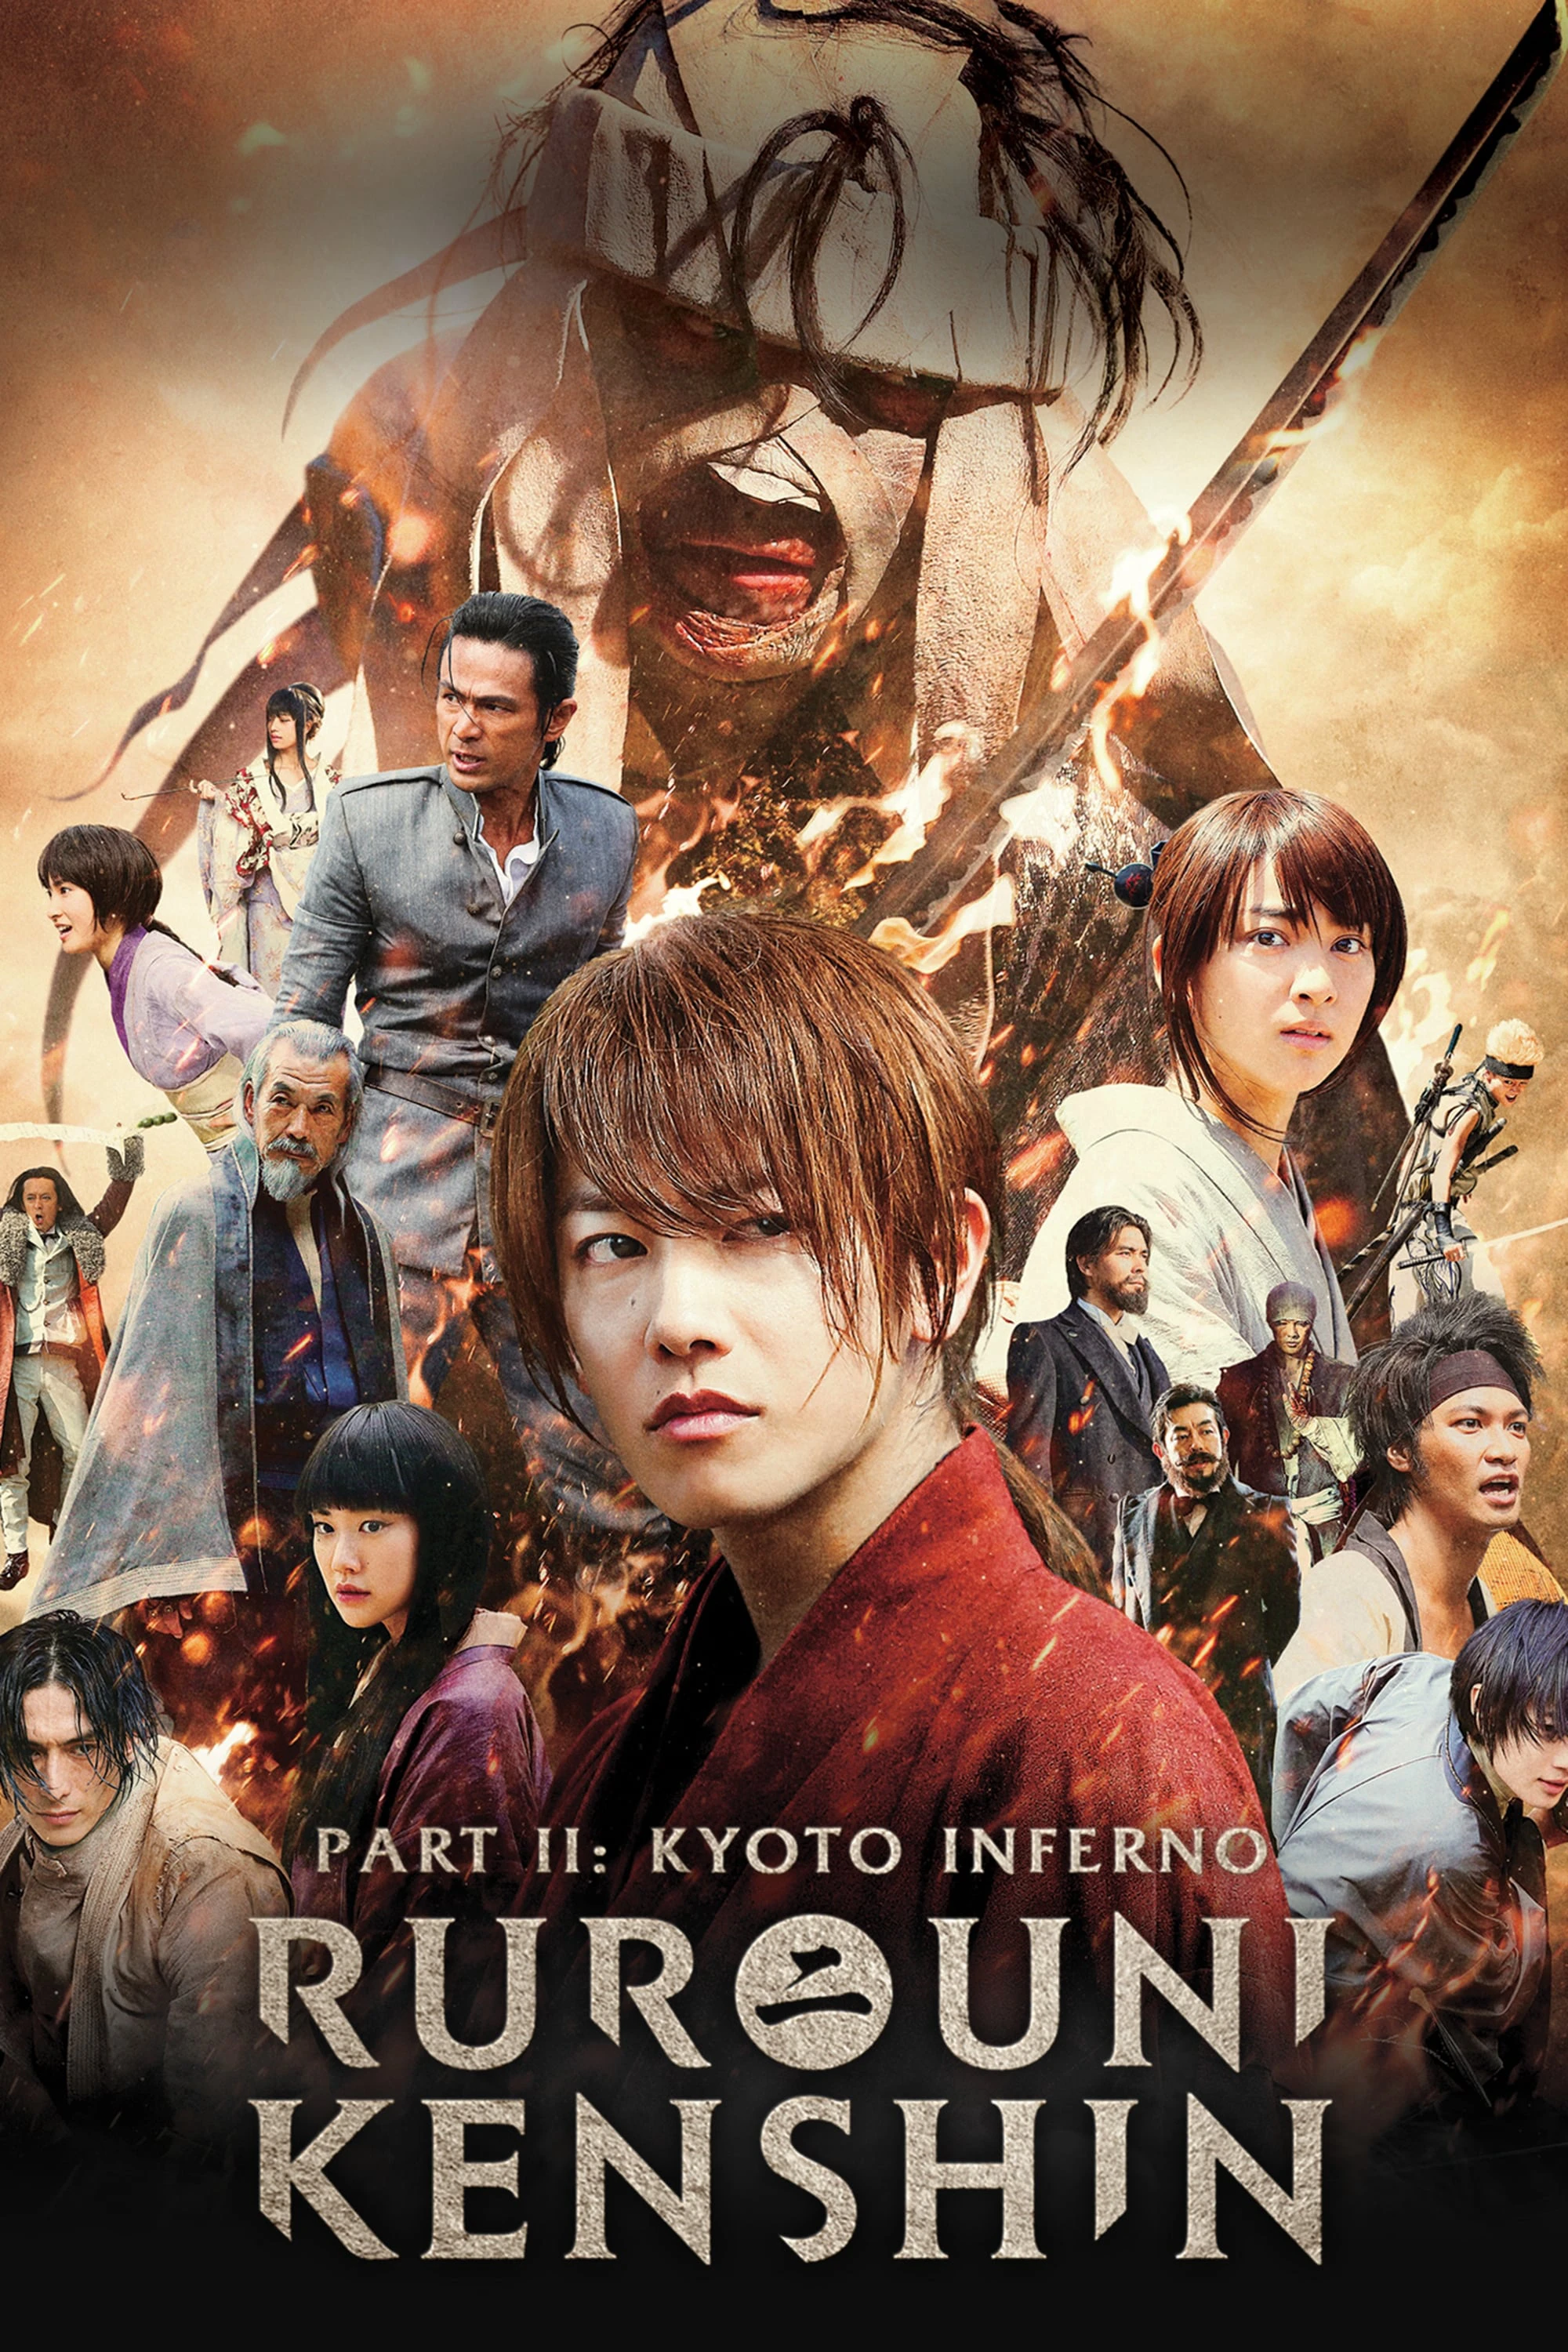 Lãng khách Kenshin 2: Đại Hỏa Kyoto | Rurouni Kenshin Part II: Kyoto Inferno (2014)